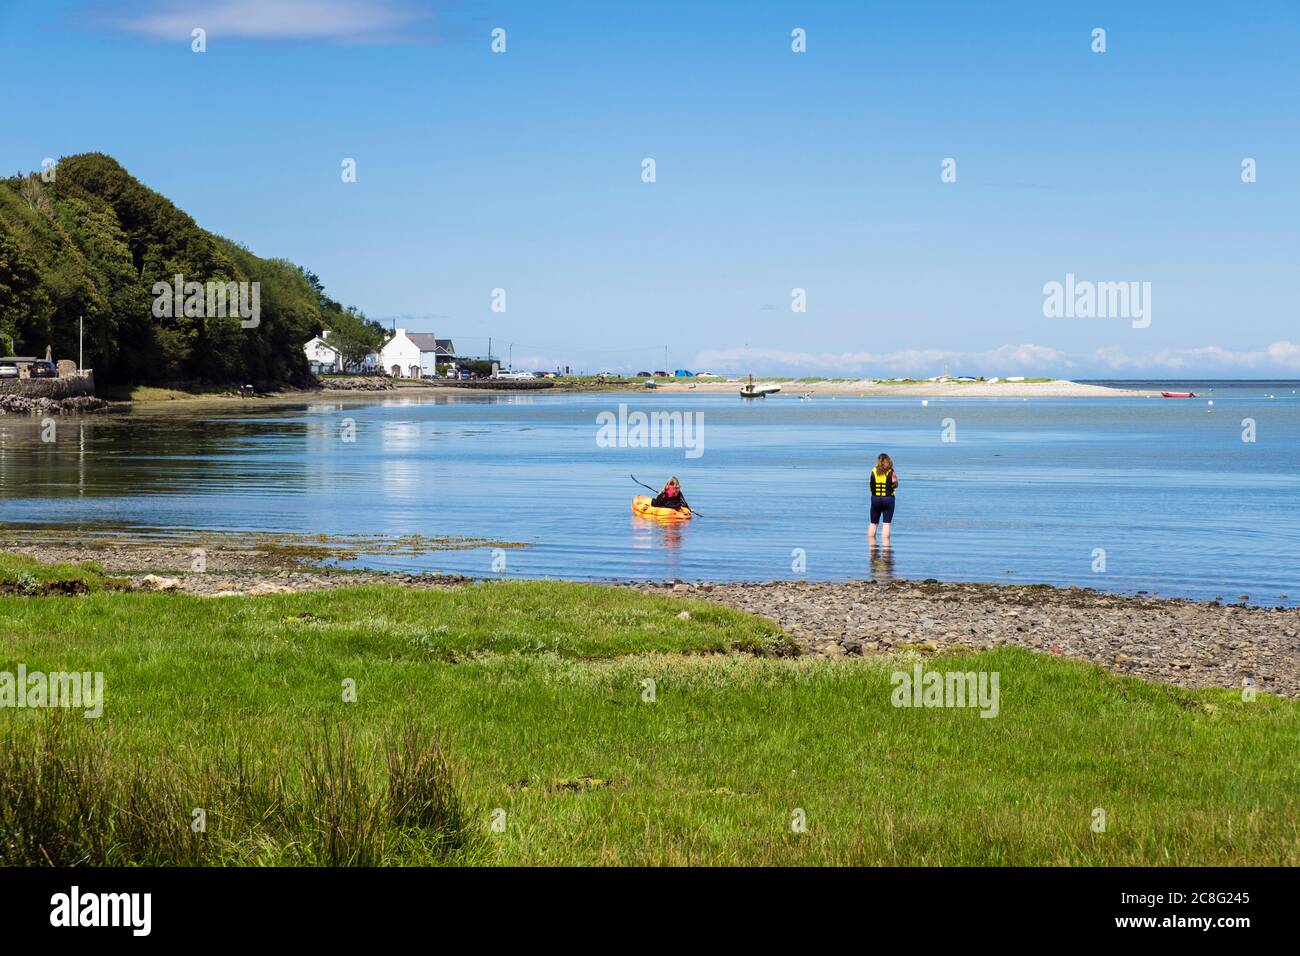 Blick auf das Dorf mit einer jungen Frau, die bei Flut im ruhigen blauen Meer in der wunderschönen Red Wharf Bay, Isle of Anglesey, Wales, Großbritannien, paddelt Stockfoto